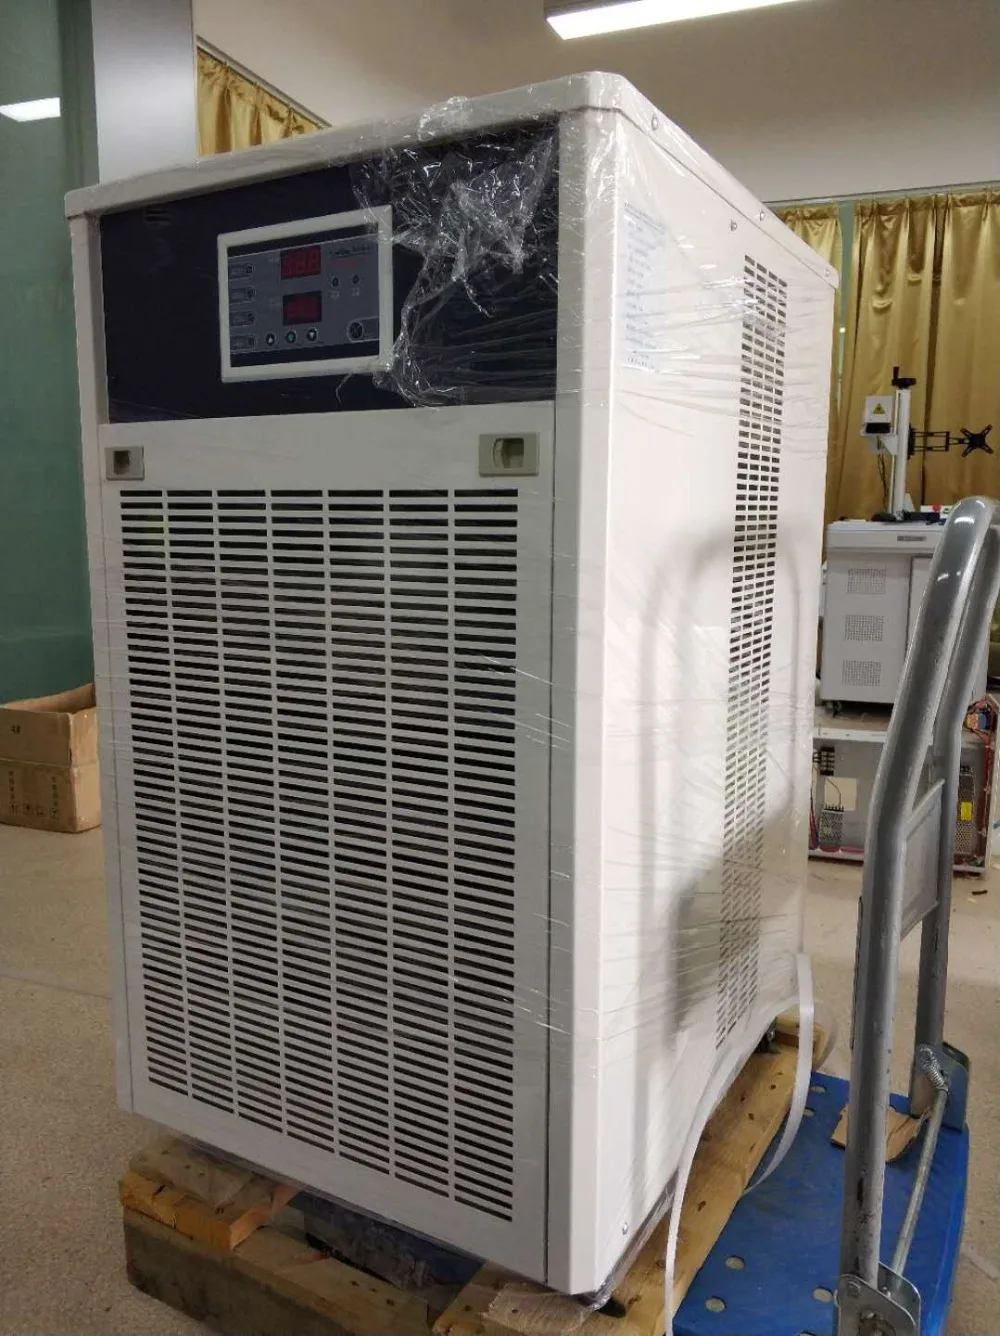 God kvalitet kølesystem hot salg vandkøler CW-5200 til salg